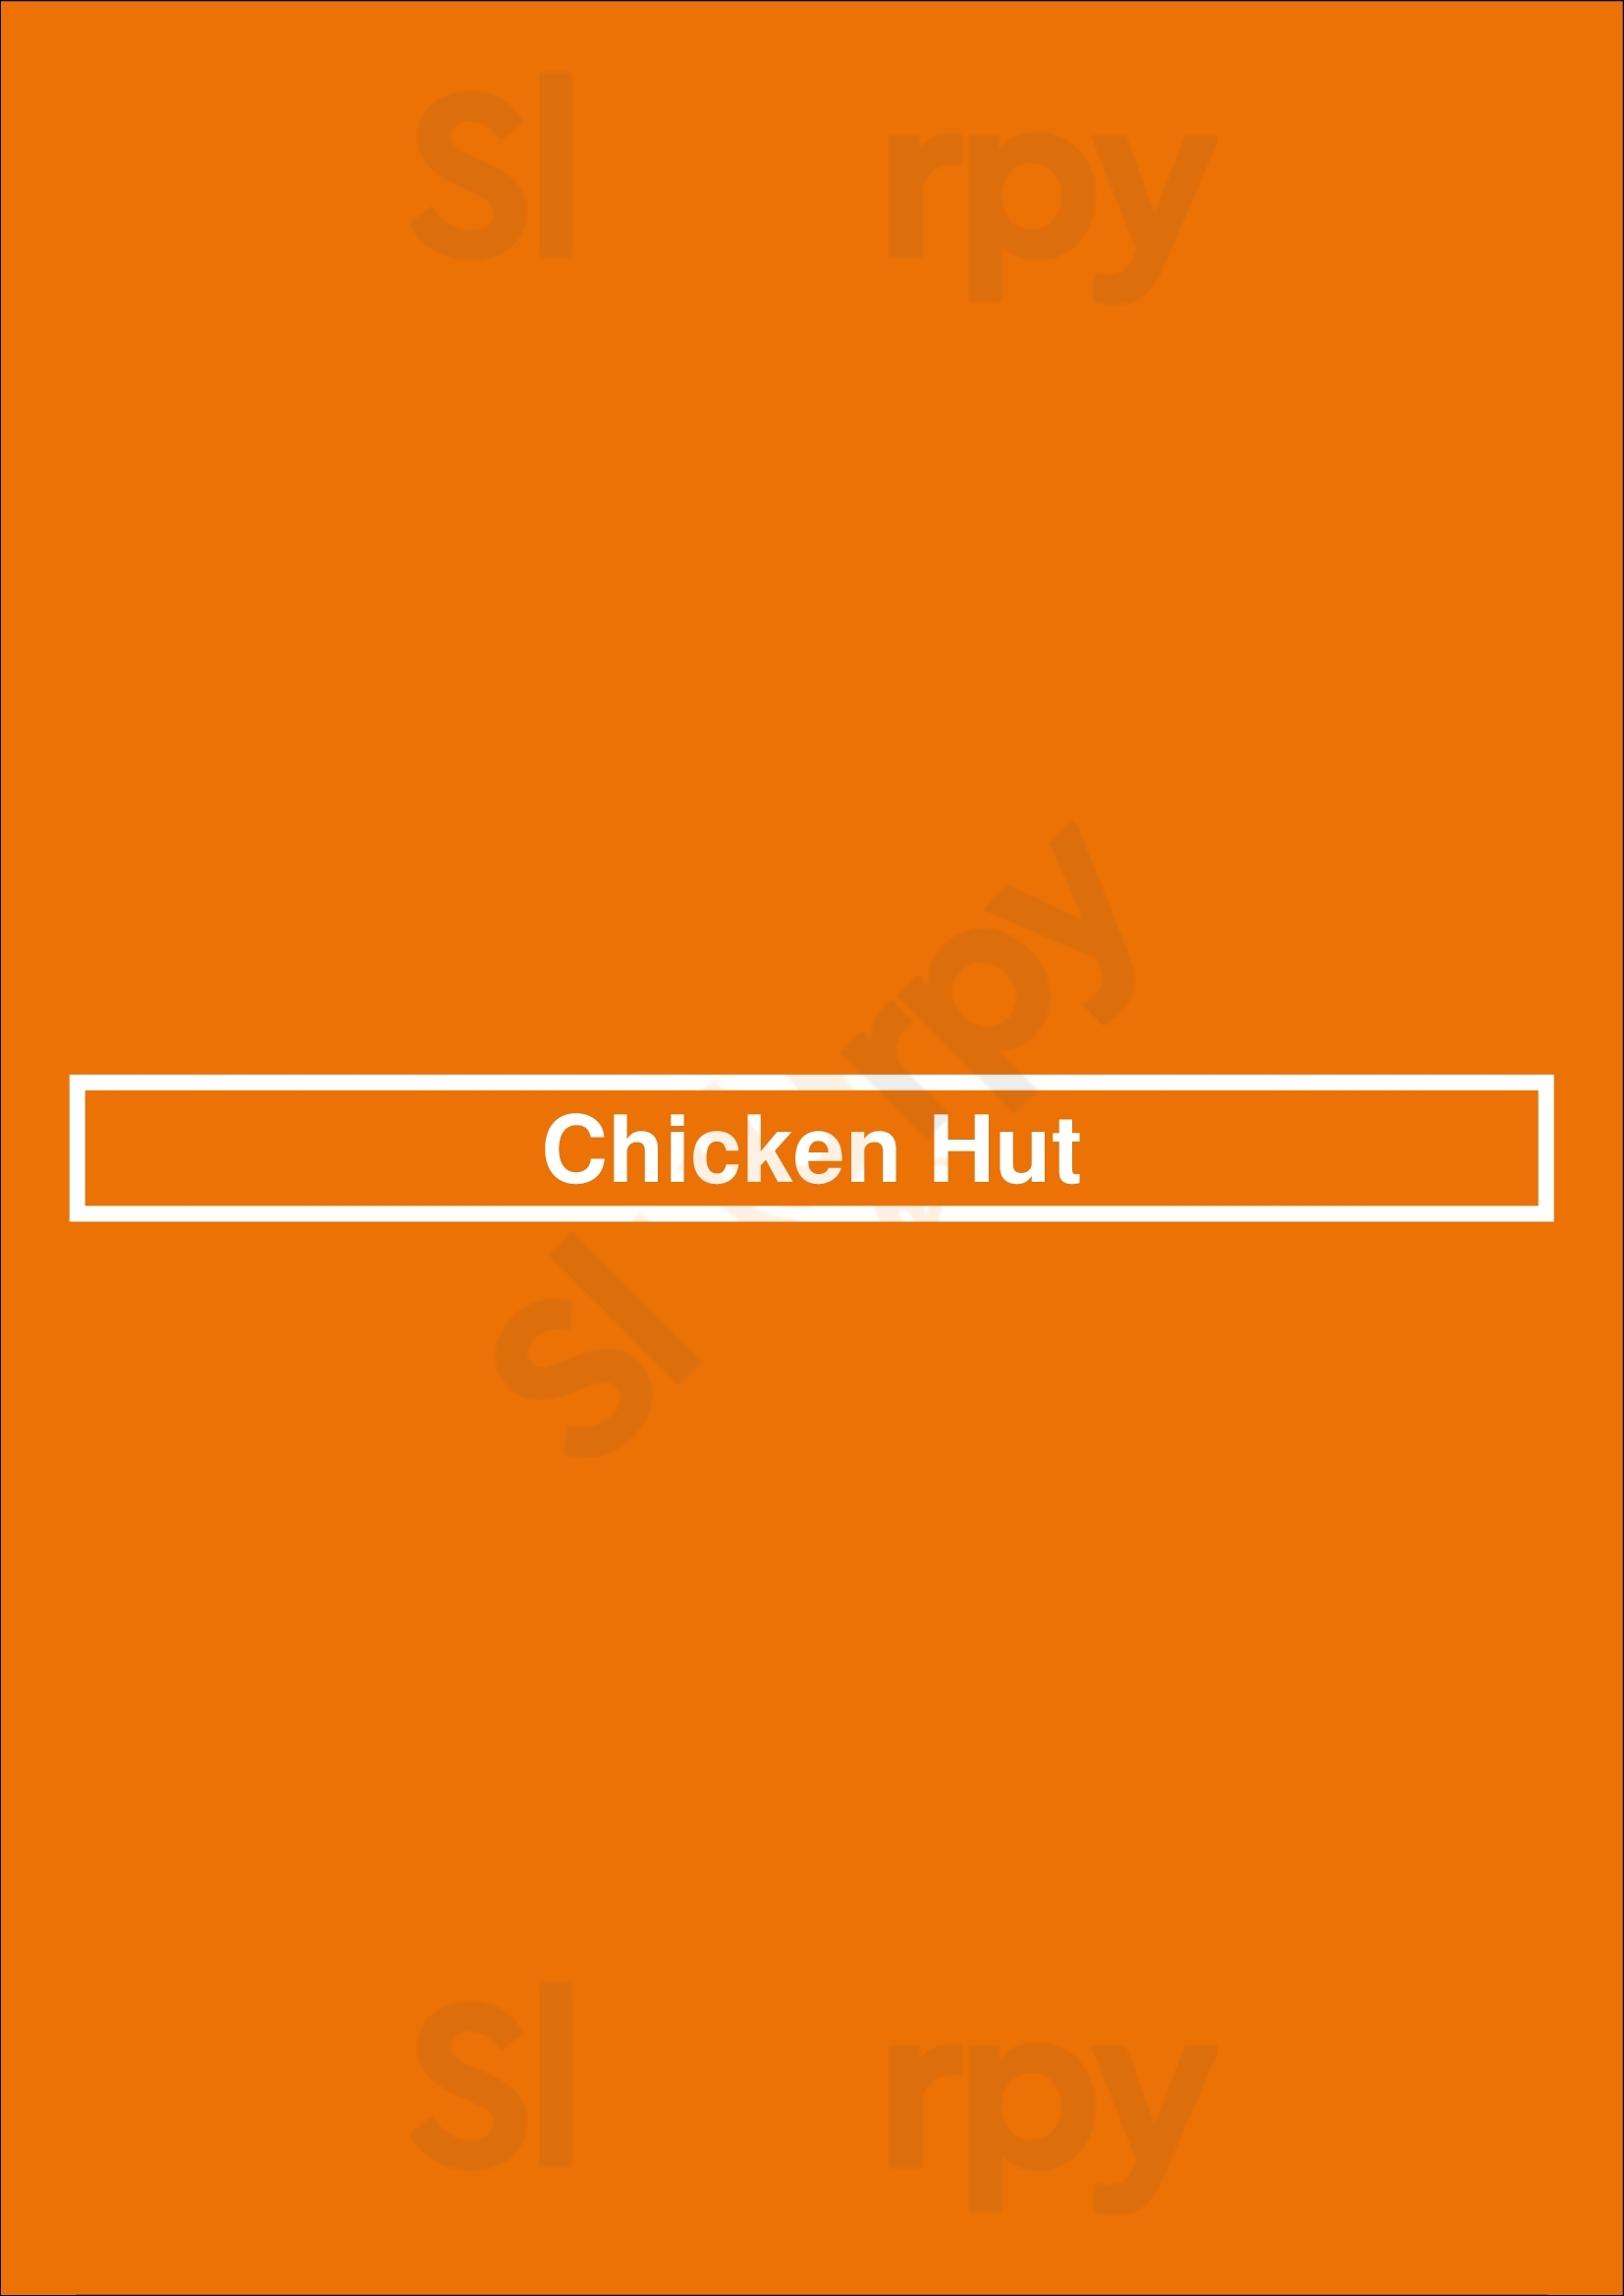 Chicken Hut Birmingham Menu - 1